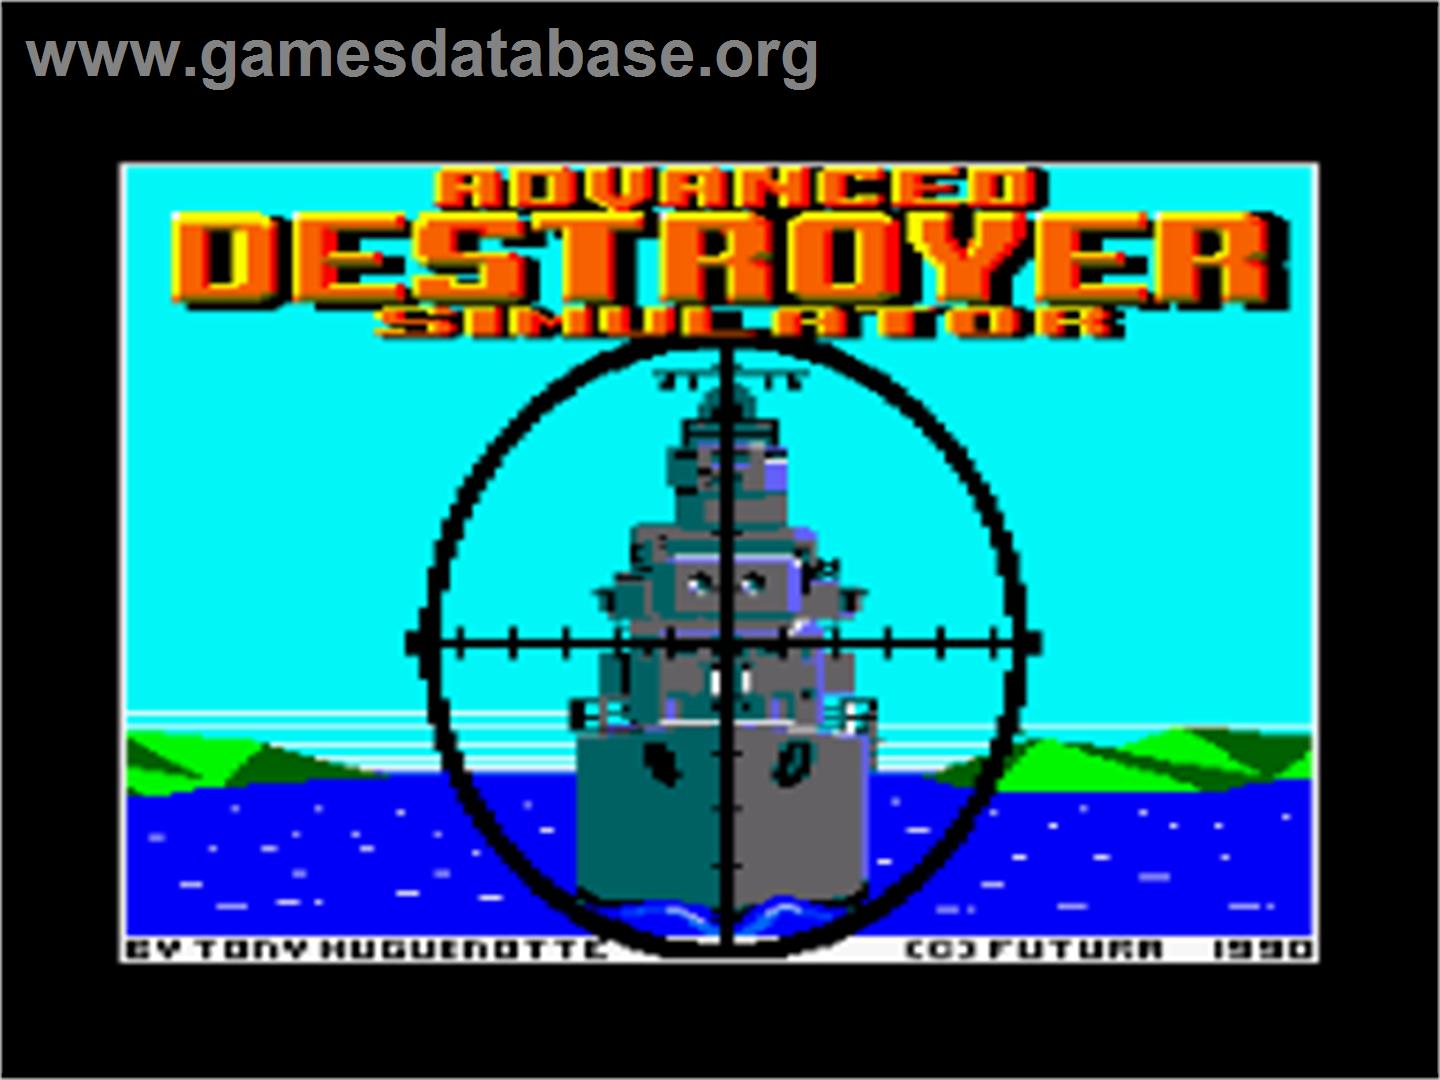 Advanced Destroyer Simulator - Amstrad CPC - Artwork - Title Screen